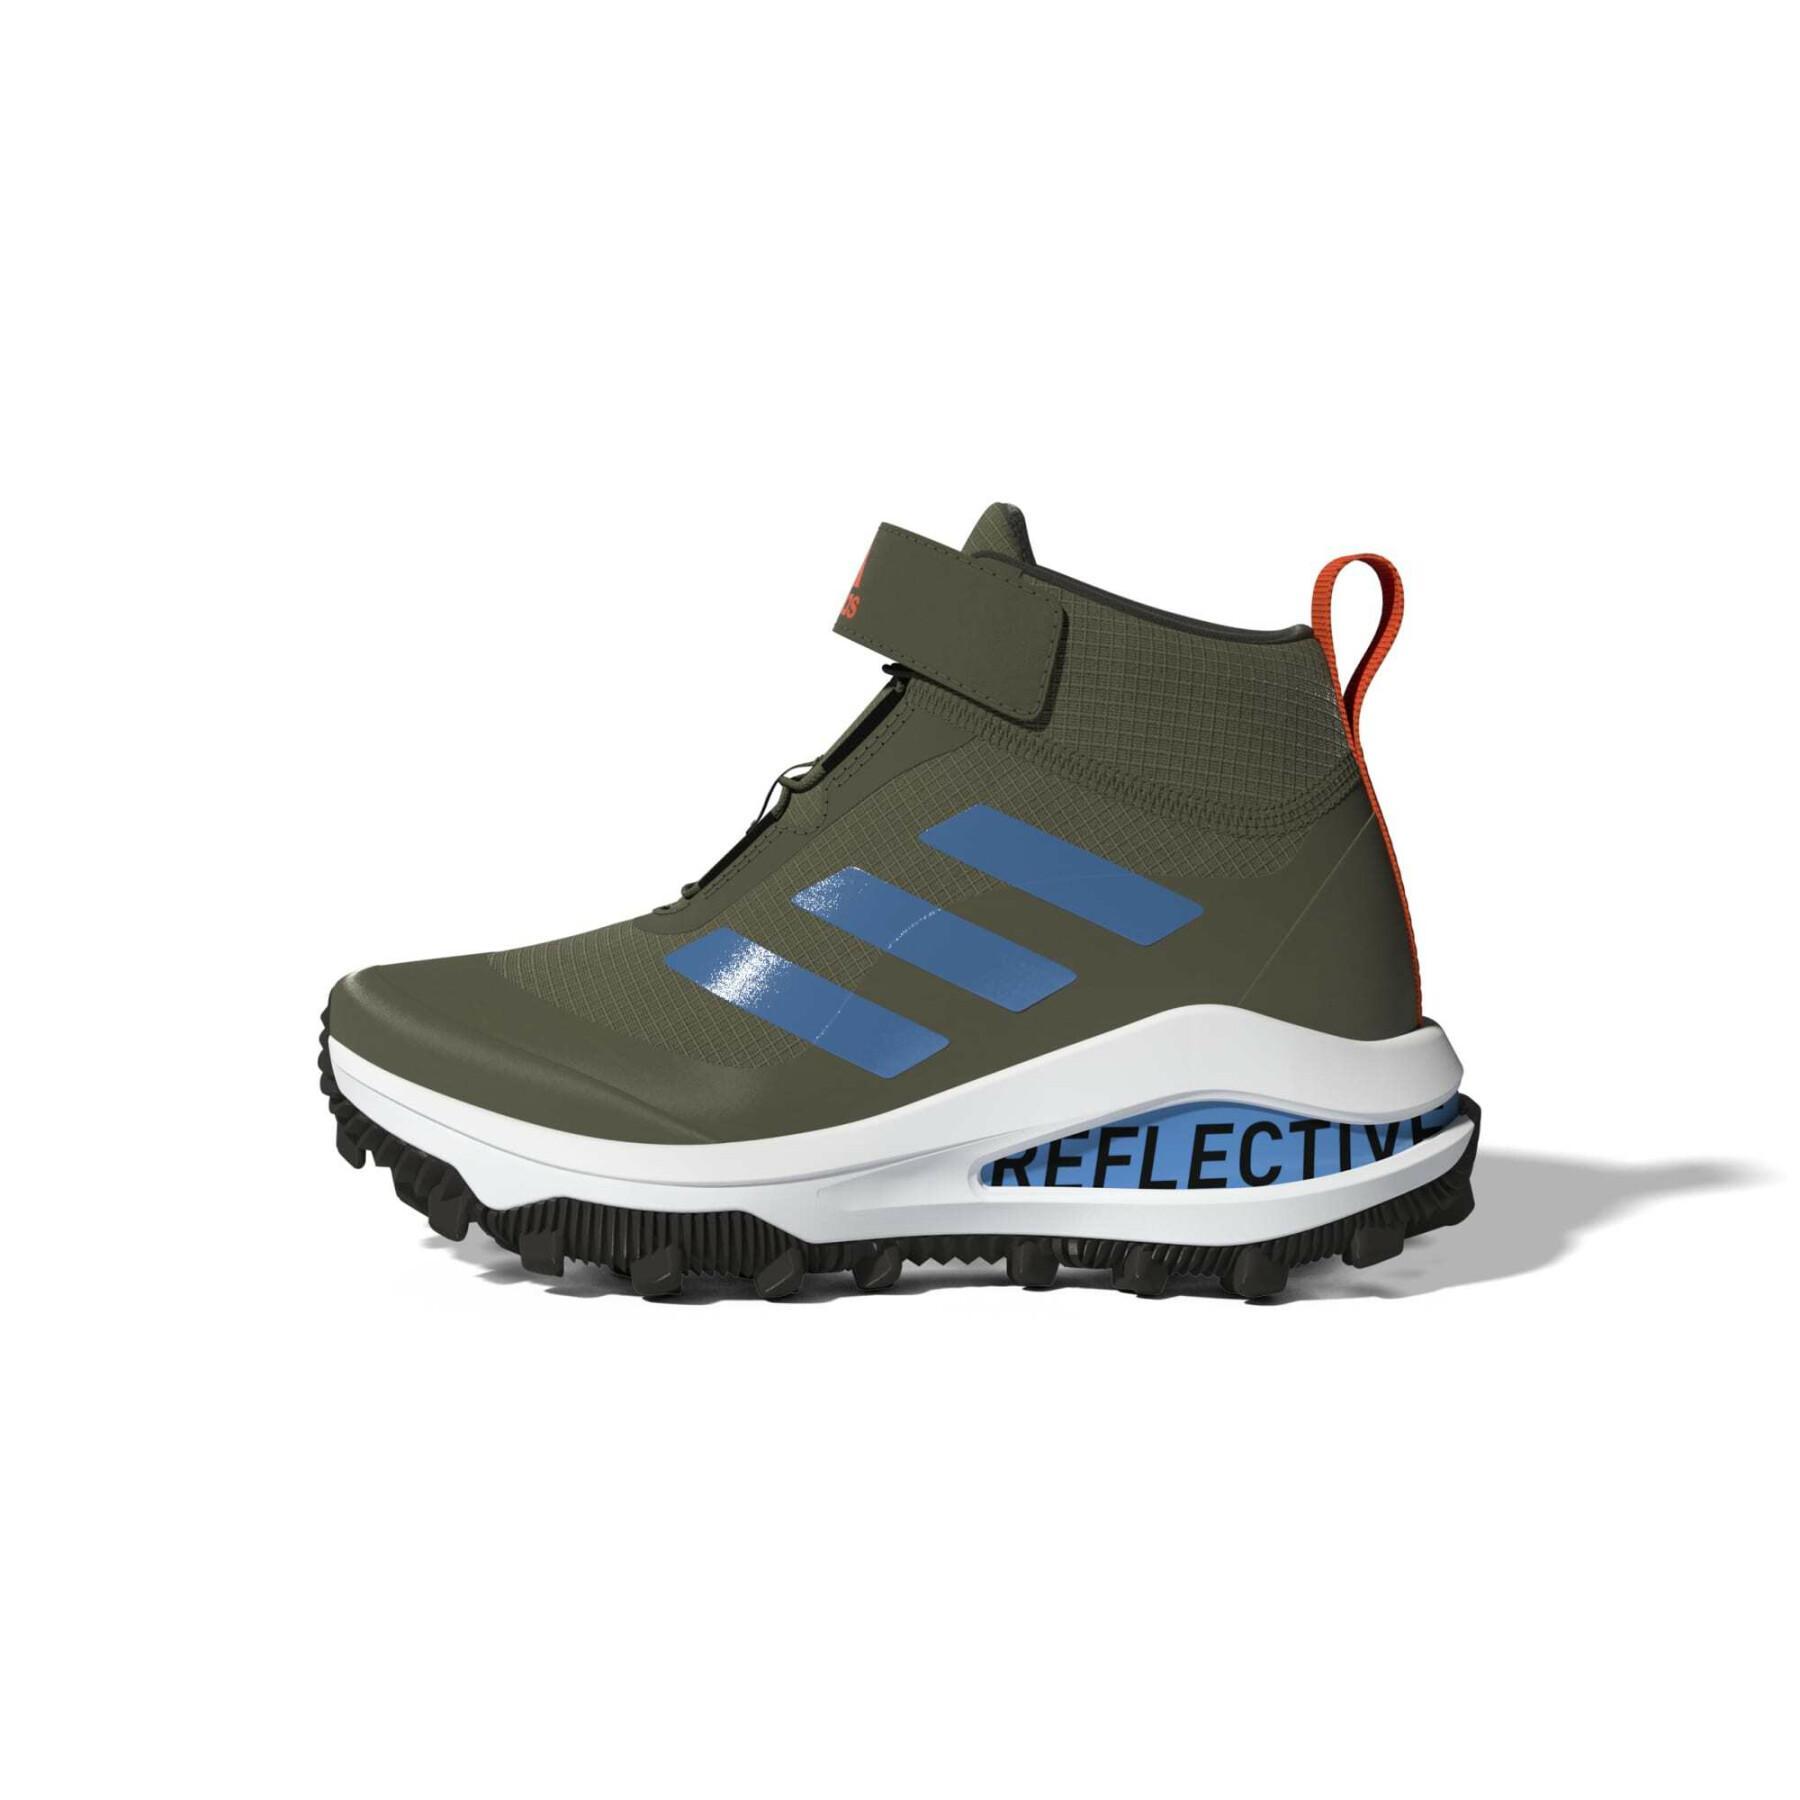 Children's running shoes adidas Fortarun All Terrain Cloudfoam Sport